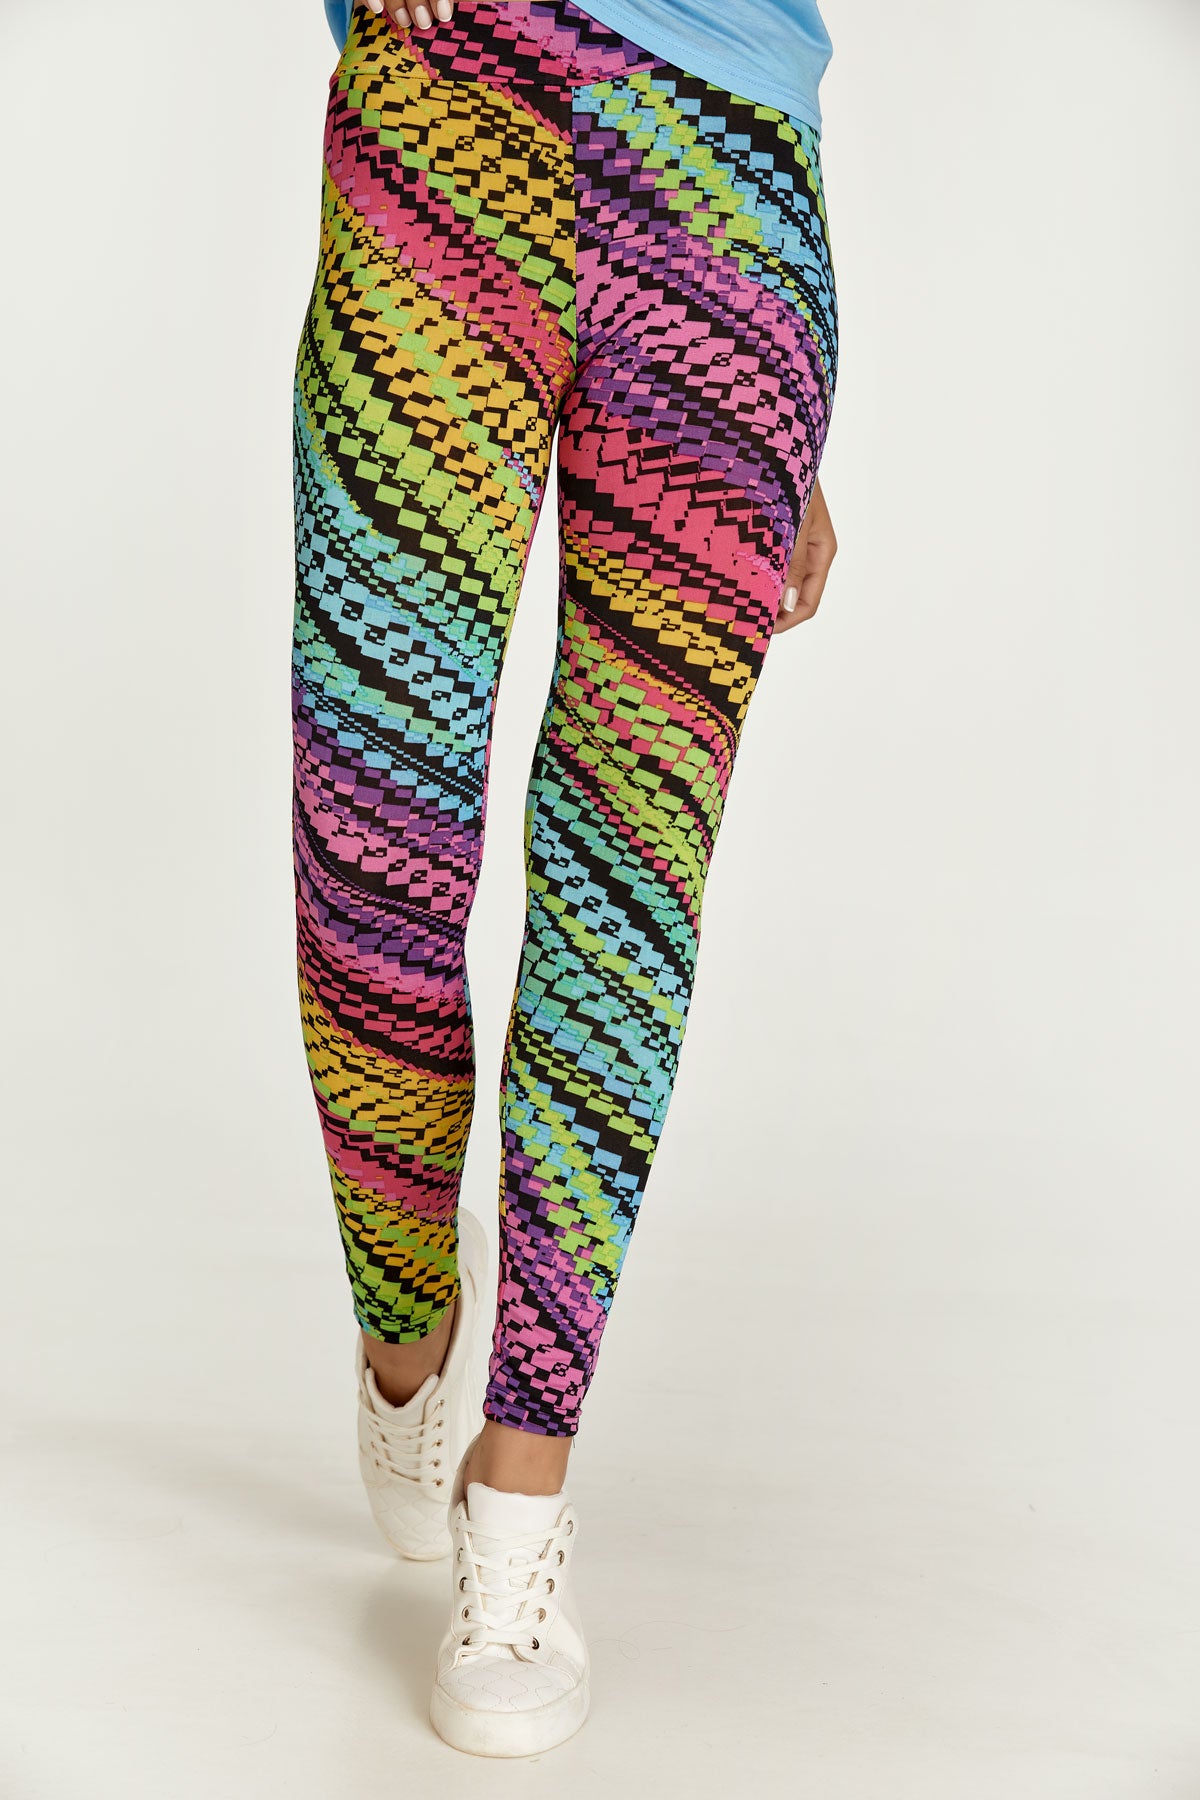 Multi color Knitting Pattern Leggings by SEAFOAM12